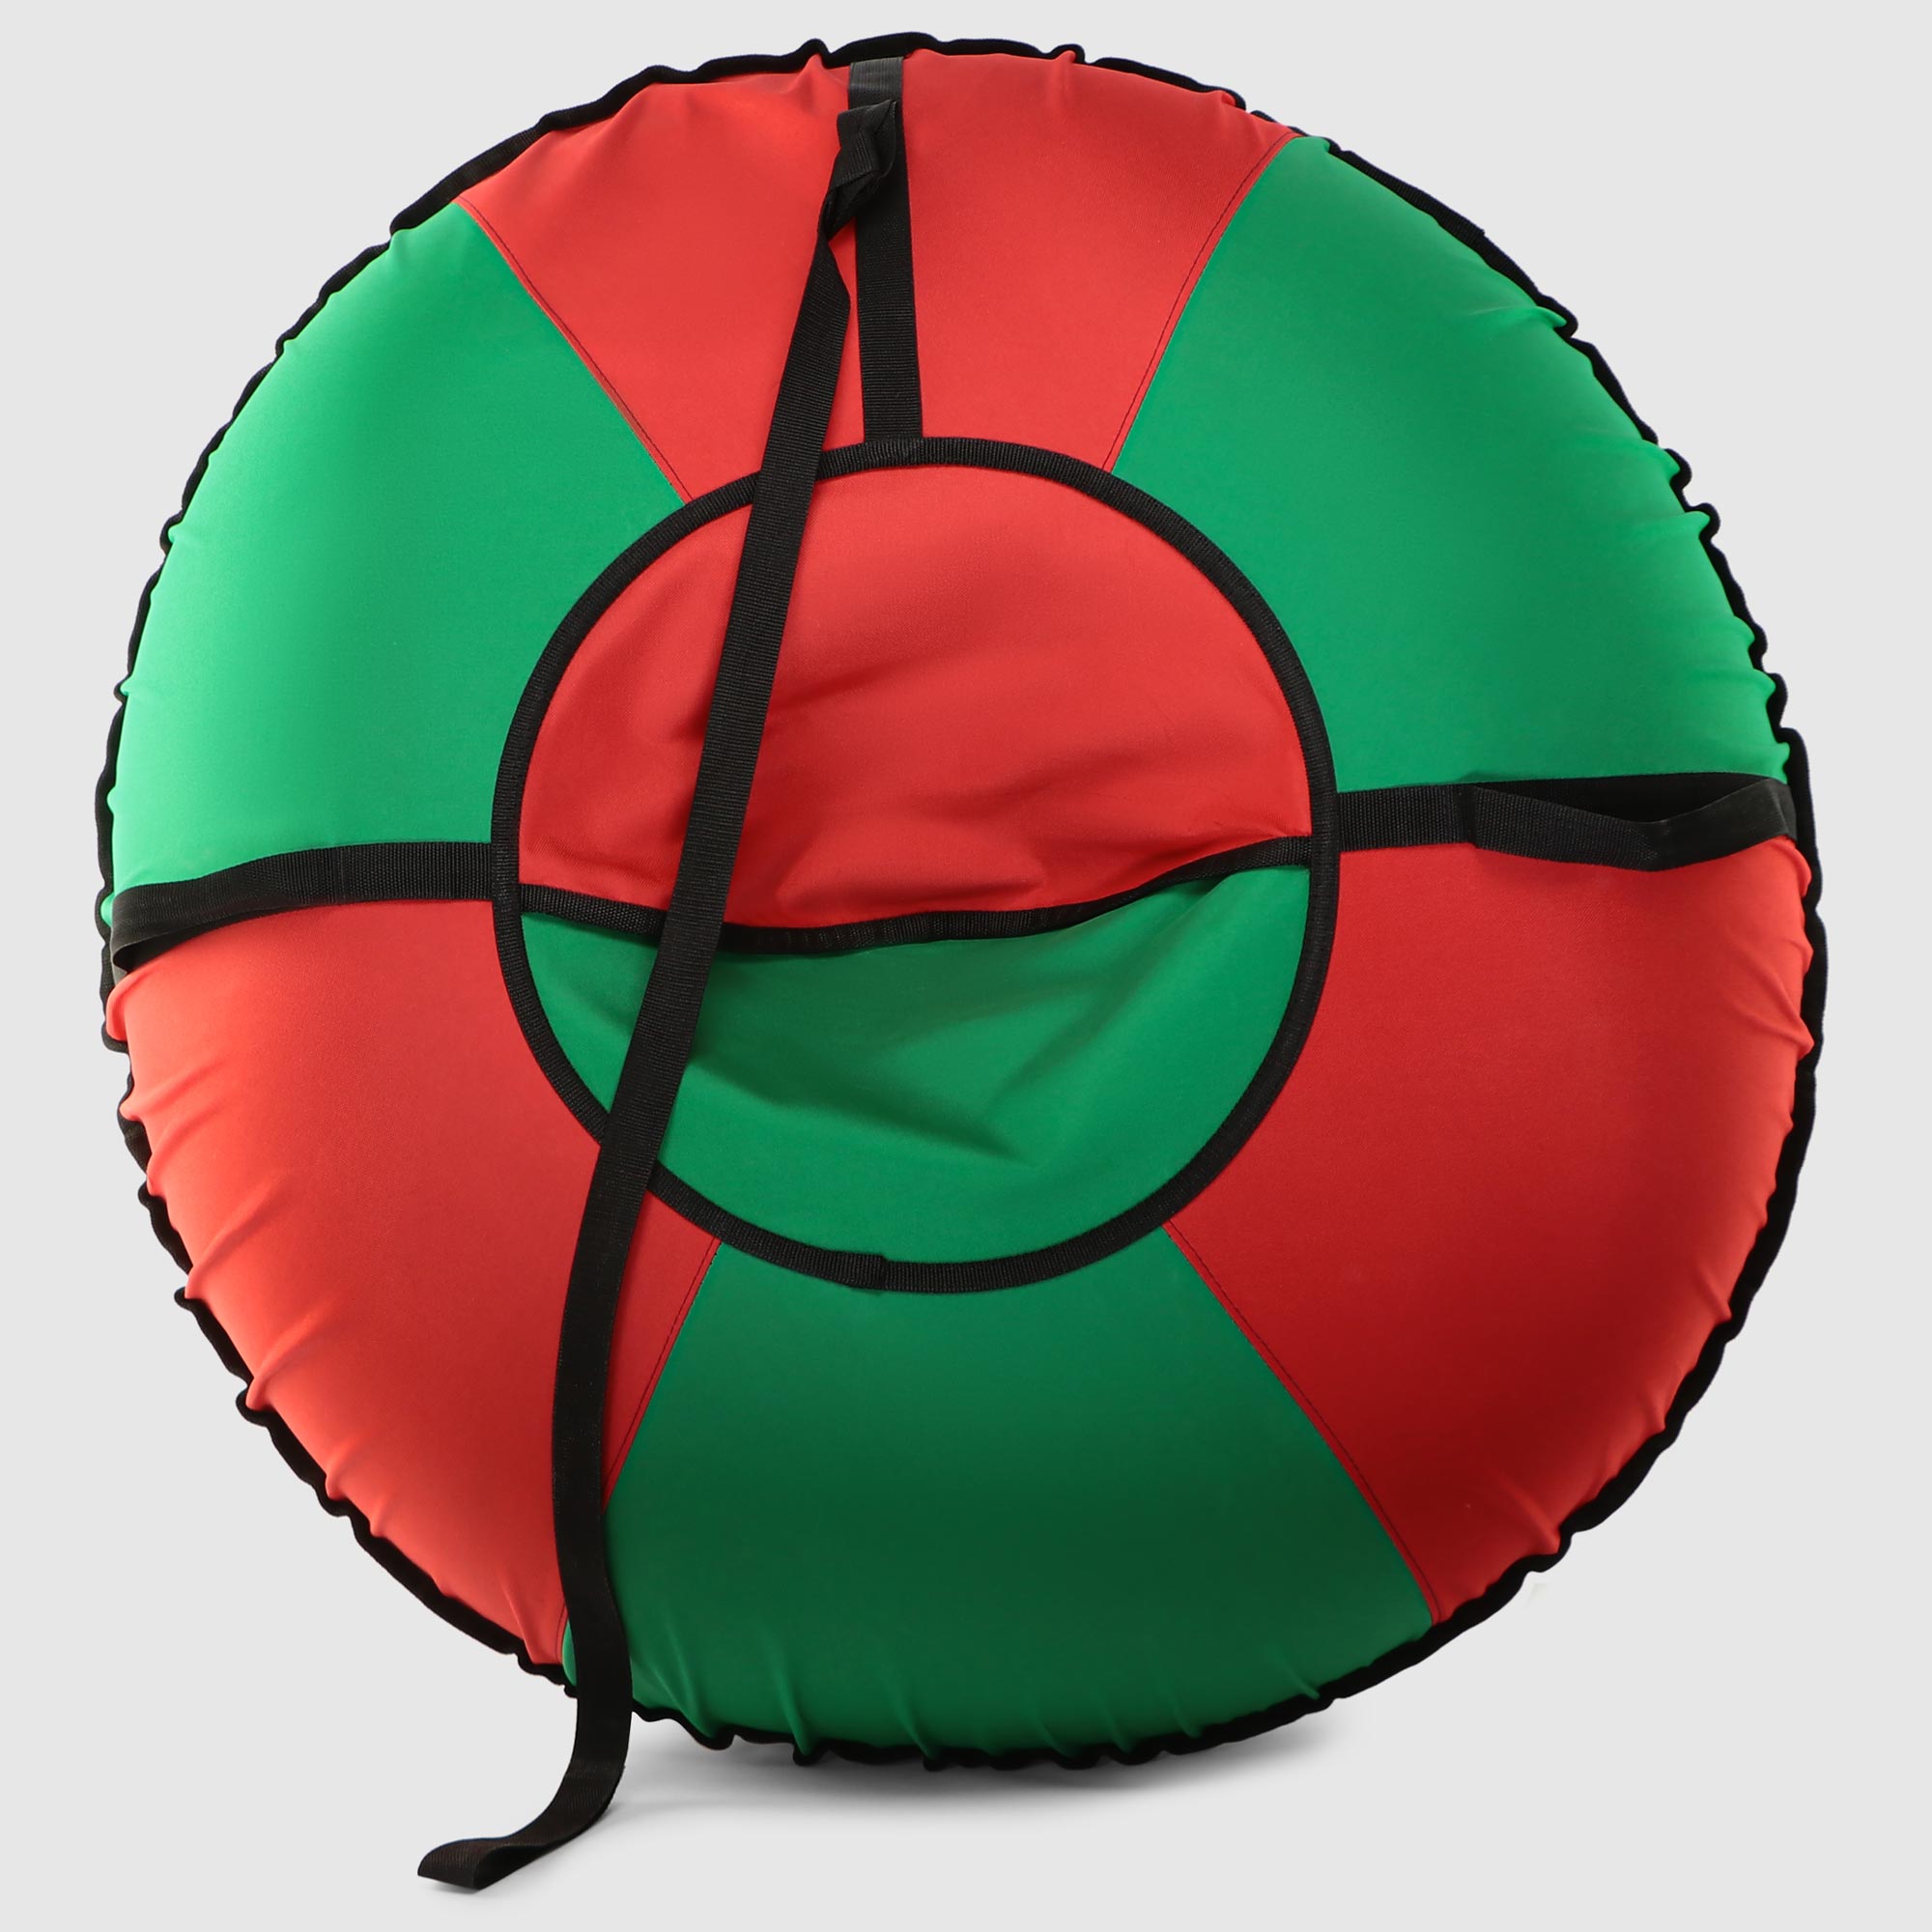 Тюбинг Profsport Стандарт зелёный с красным 110 см